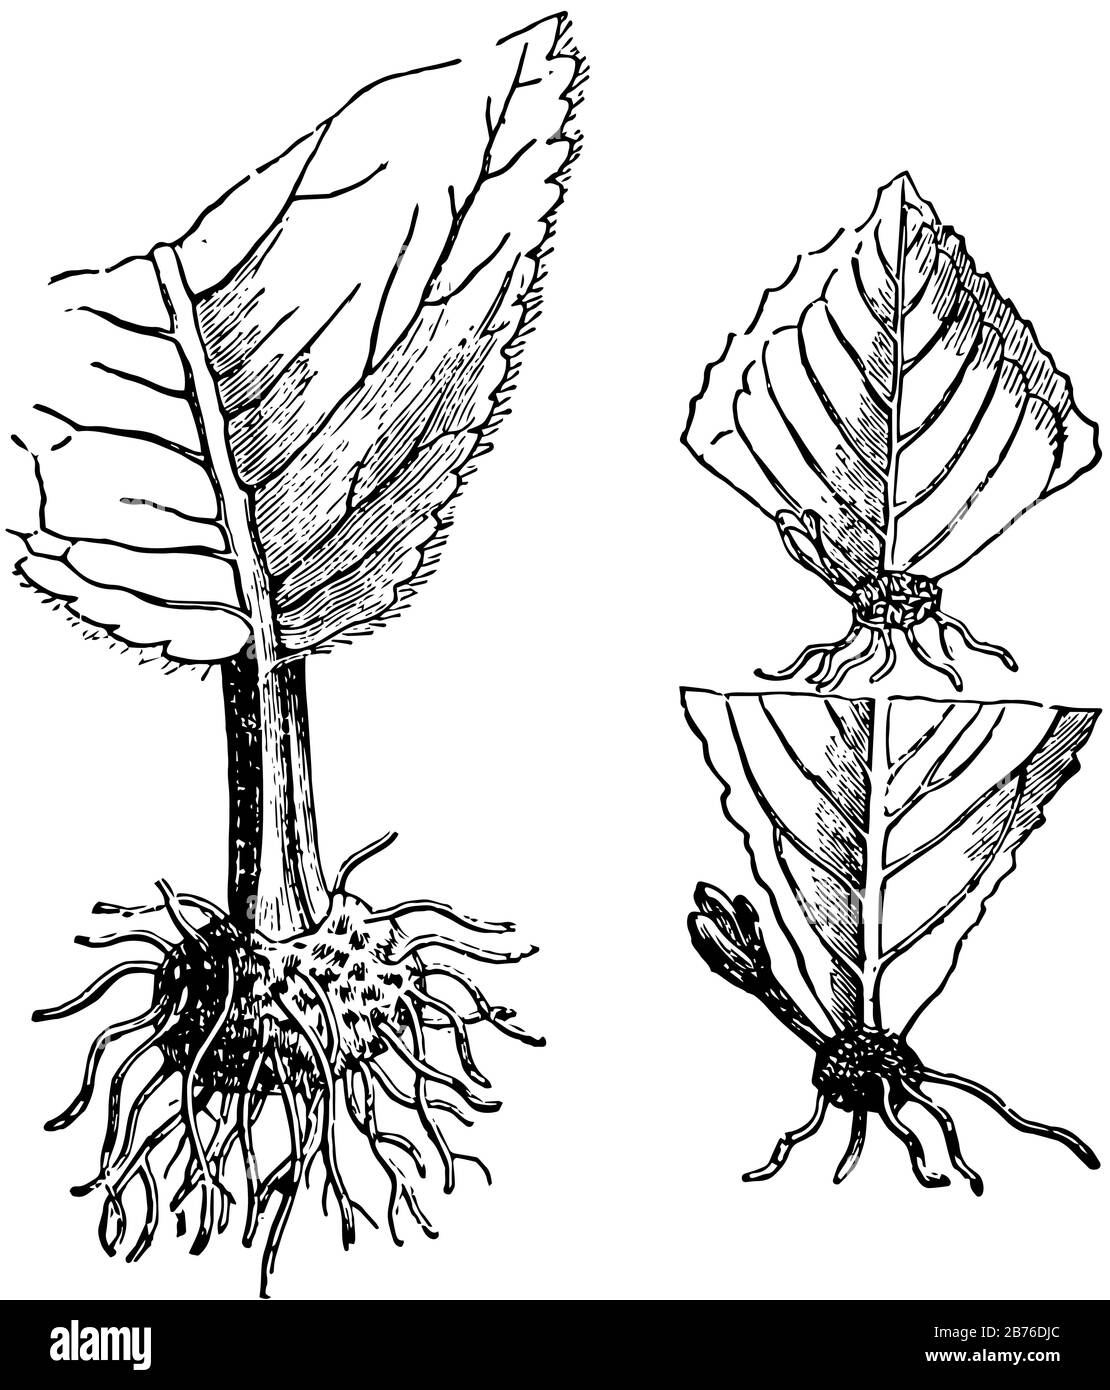 Questa illustrazione rappresenta Le Talee di foglia dove due germogli di foglia tagli da un gambo con le foglie opposte, disegno di linea vintage o illustrazione di incisione Illustrazione Vettoriale